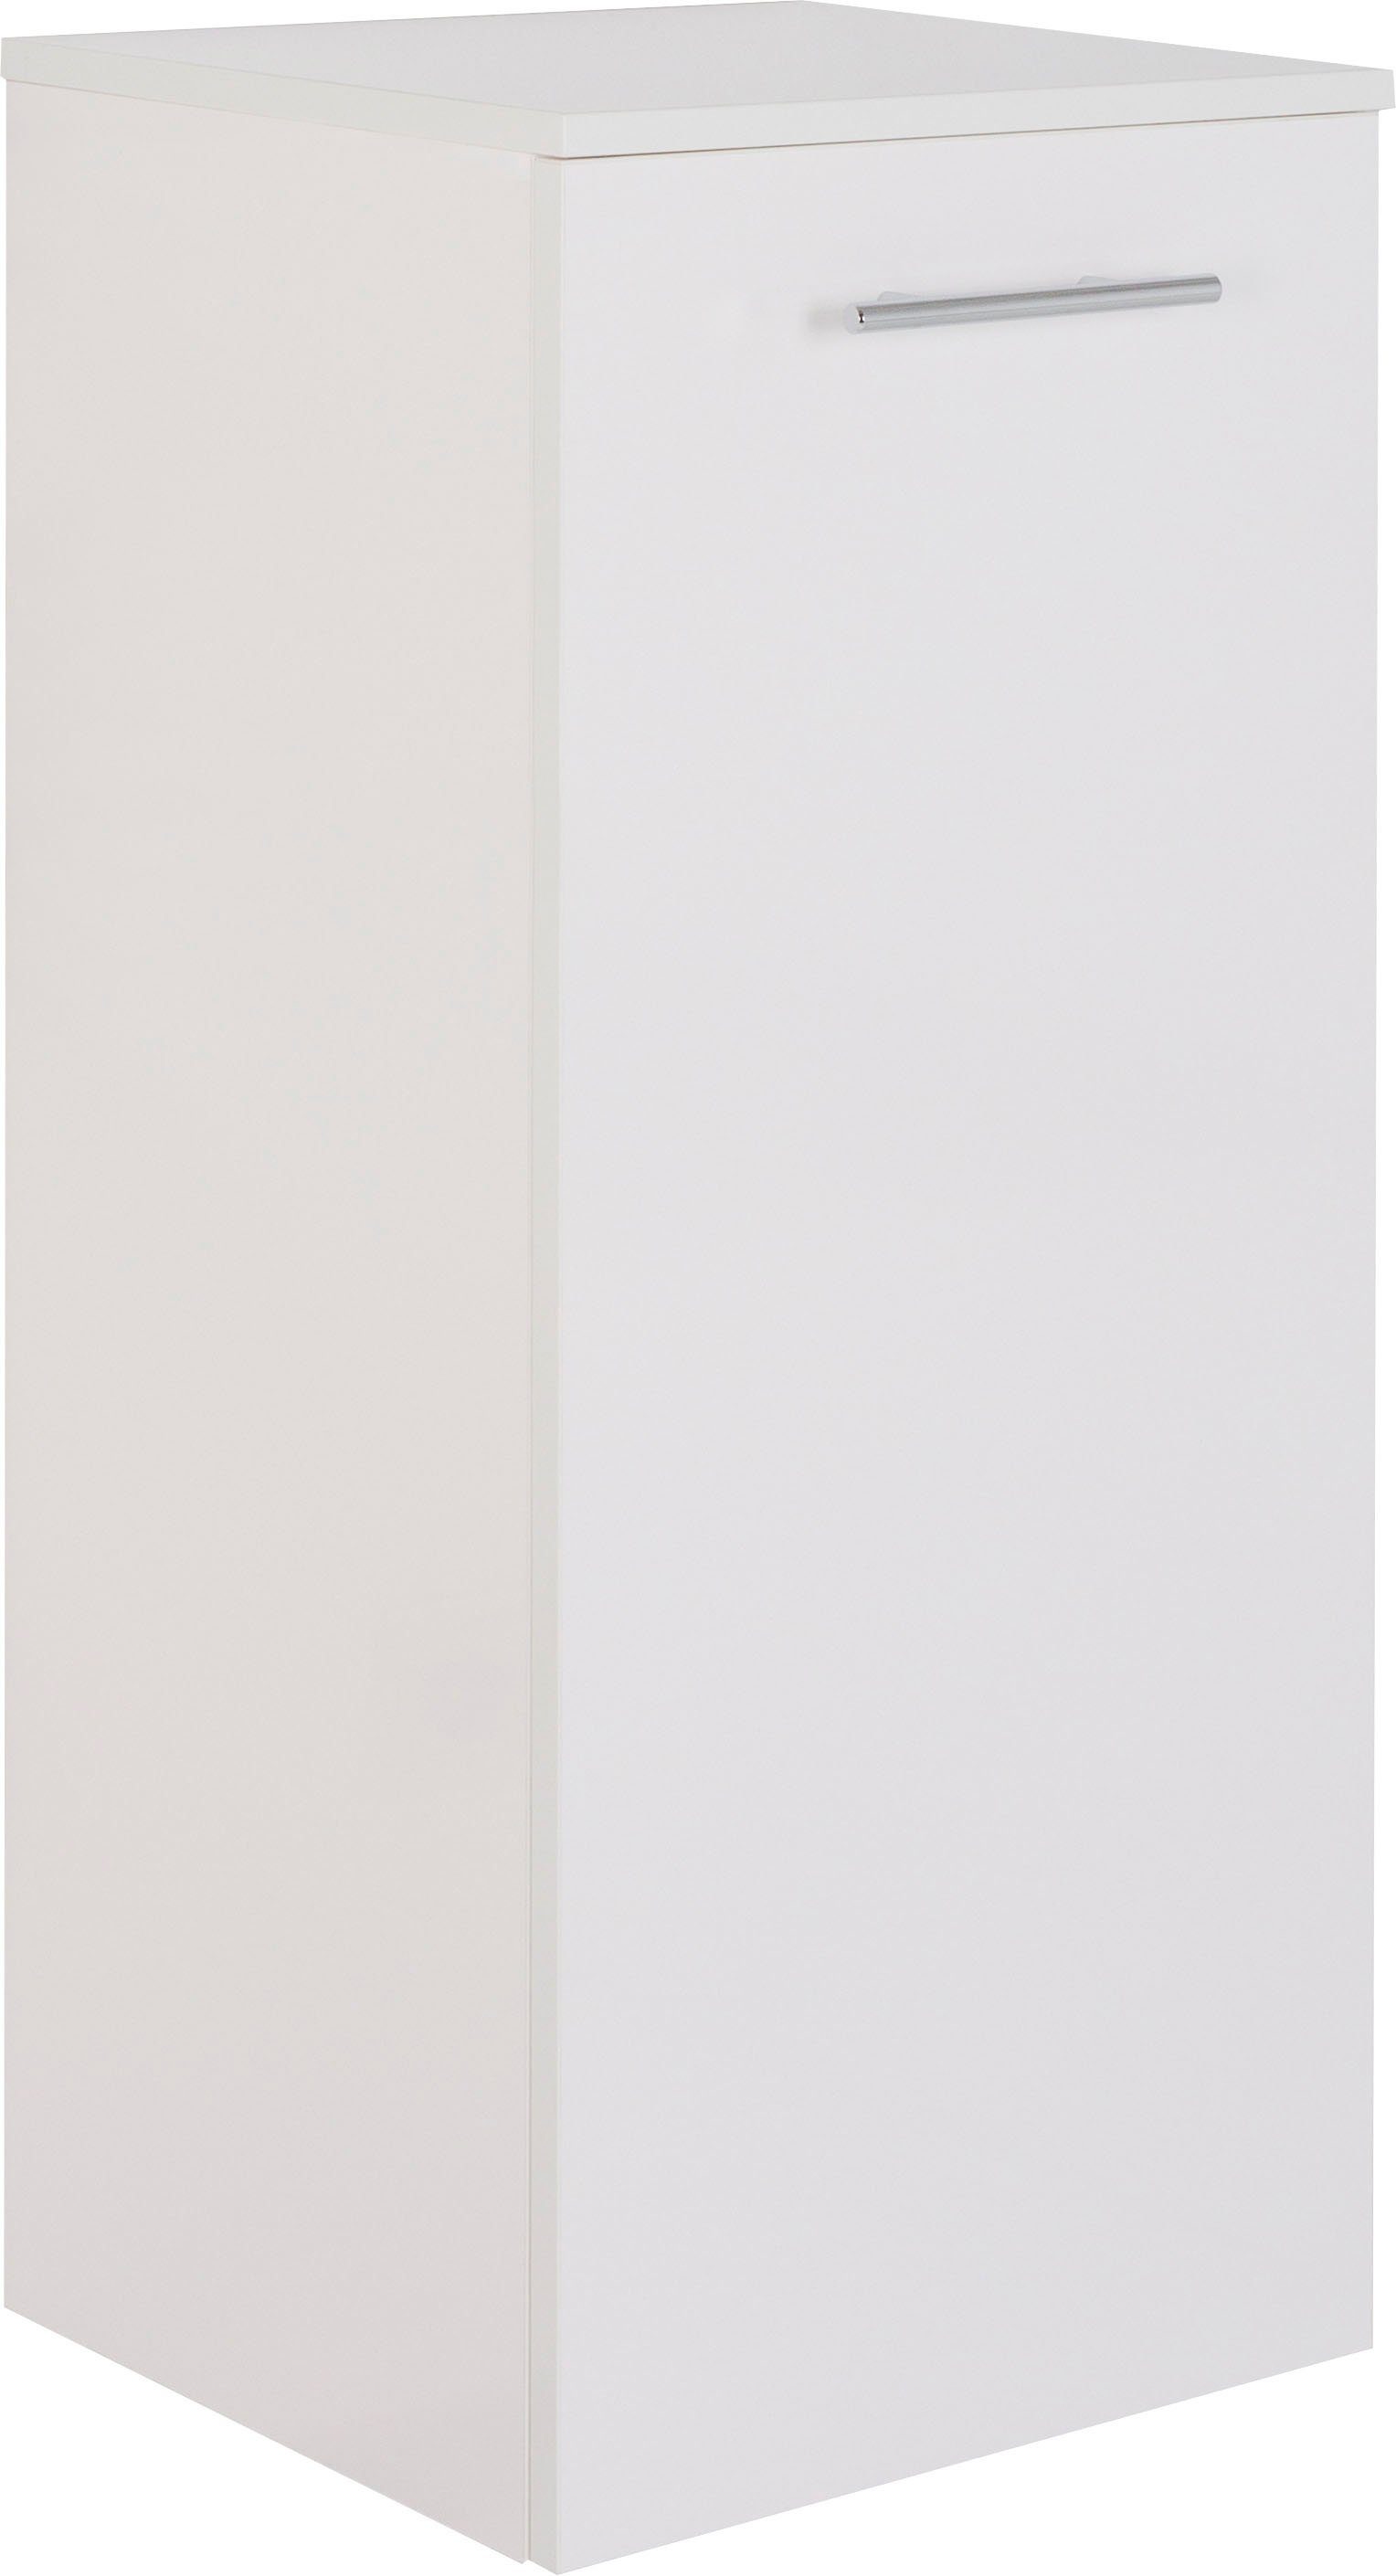 MARLIN Midischrank 3040, Breite 40 cm weiß | weiß | Midischränke